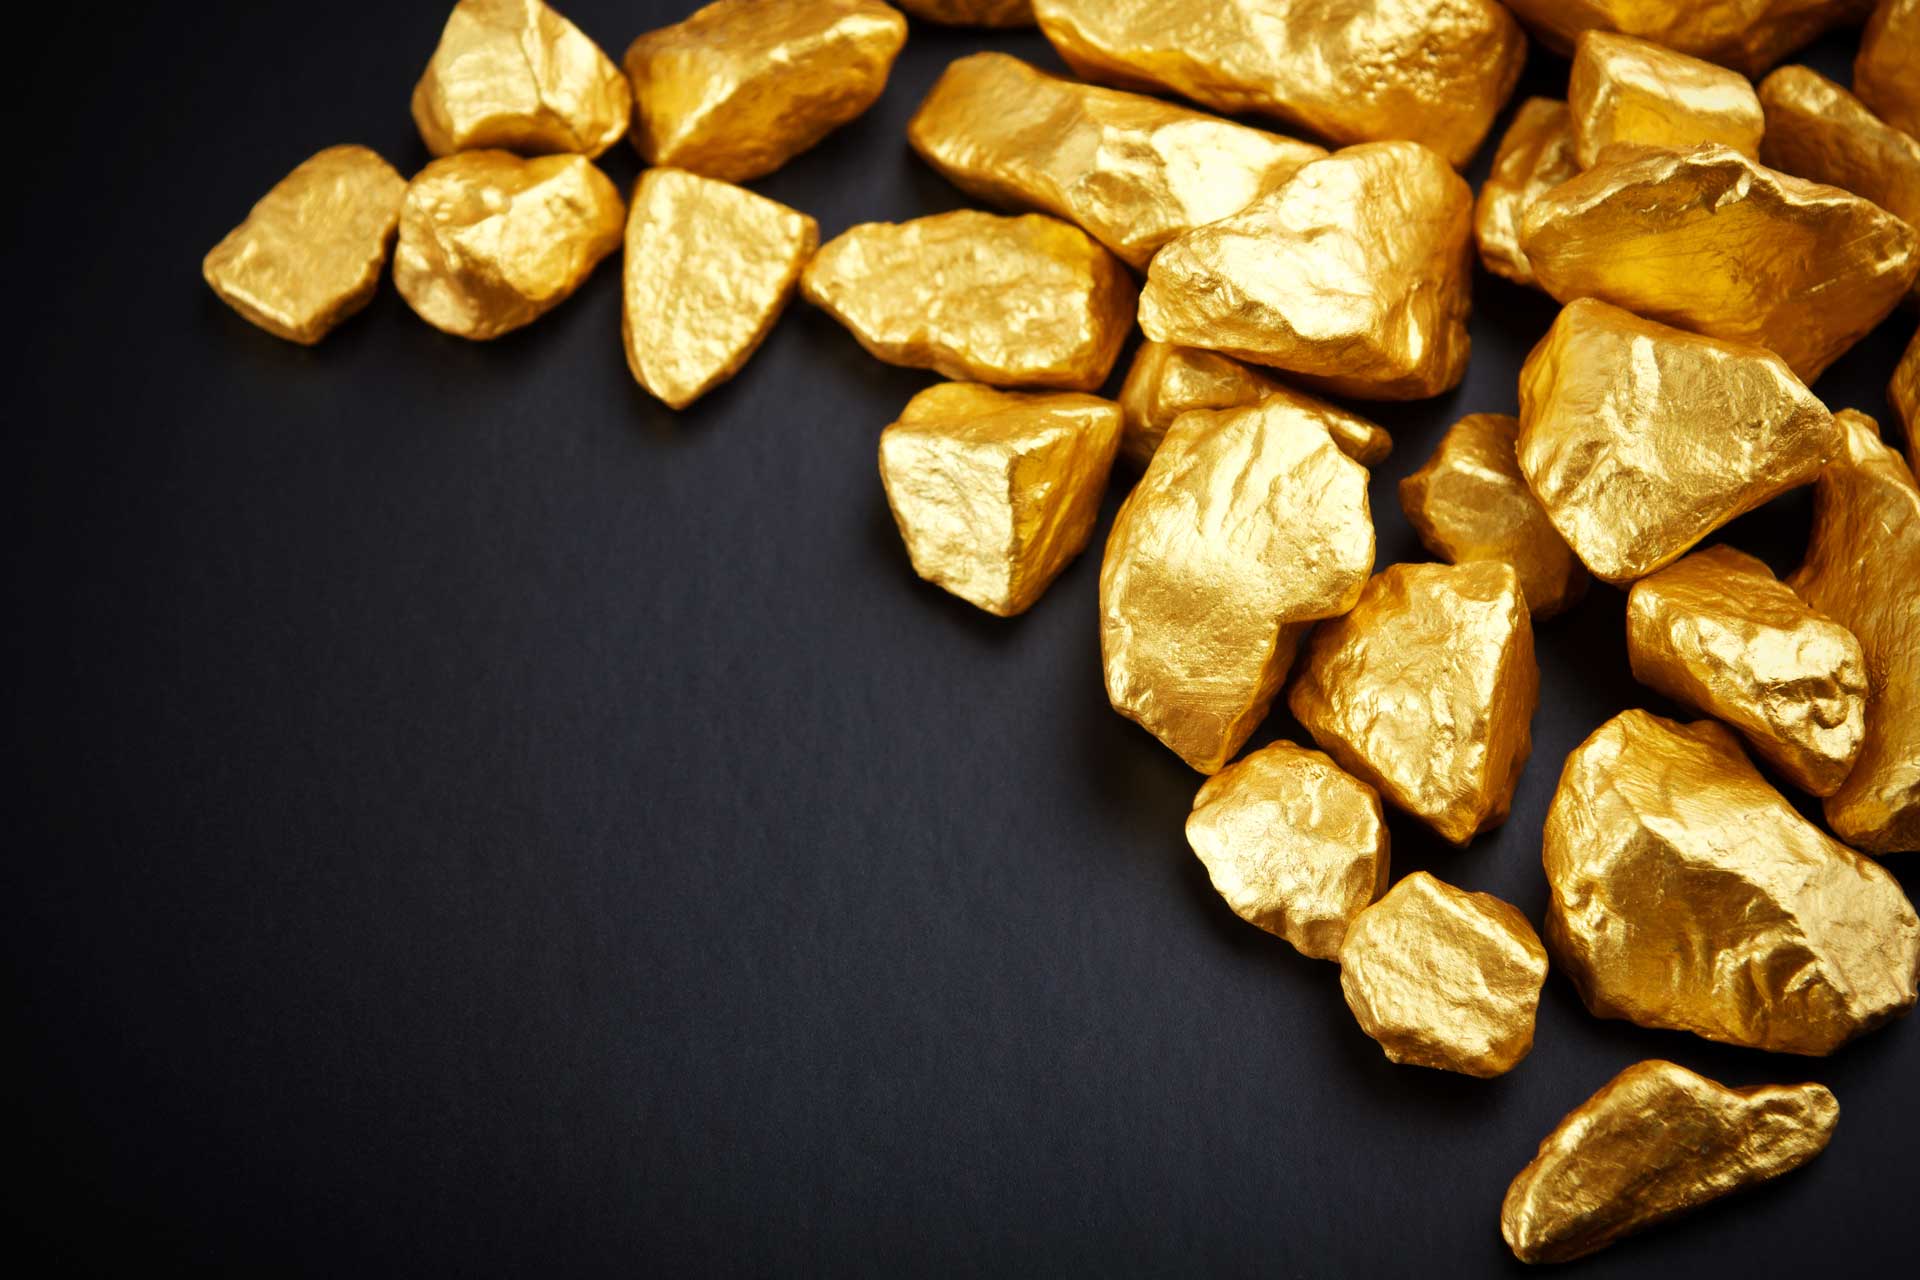 Hiện giá vàng thế giới quy đổi là 29,5 triệu đồng/lượng, thấp hơn giá vàng trong nước 3,7 triệu đồng/lượng